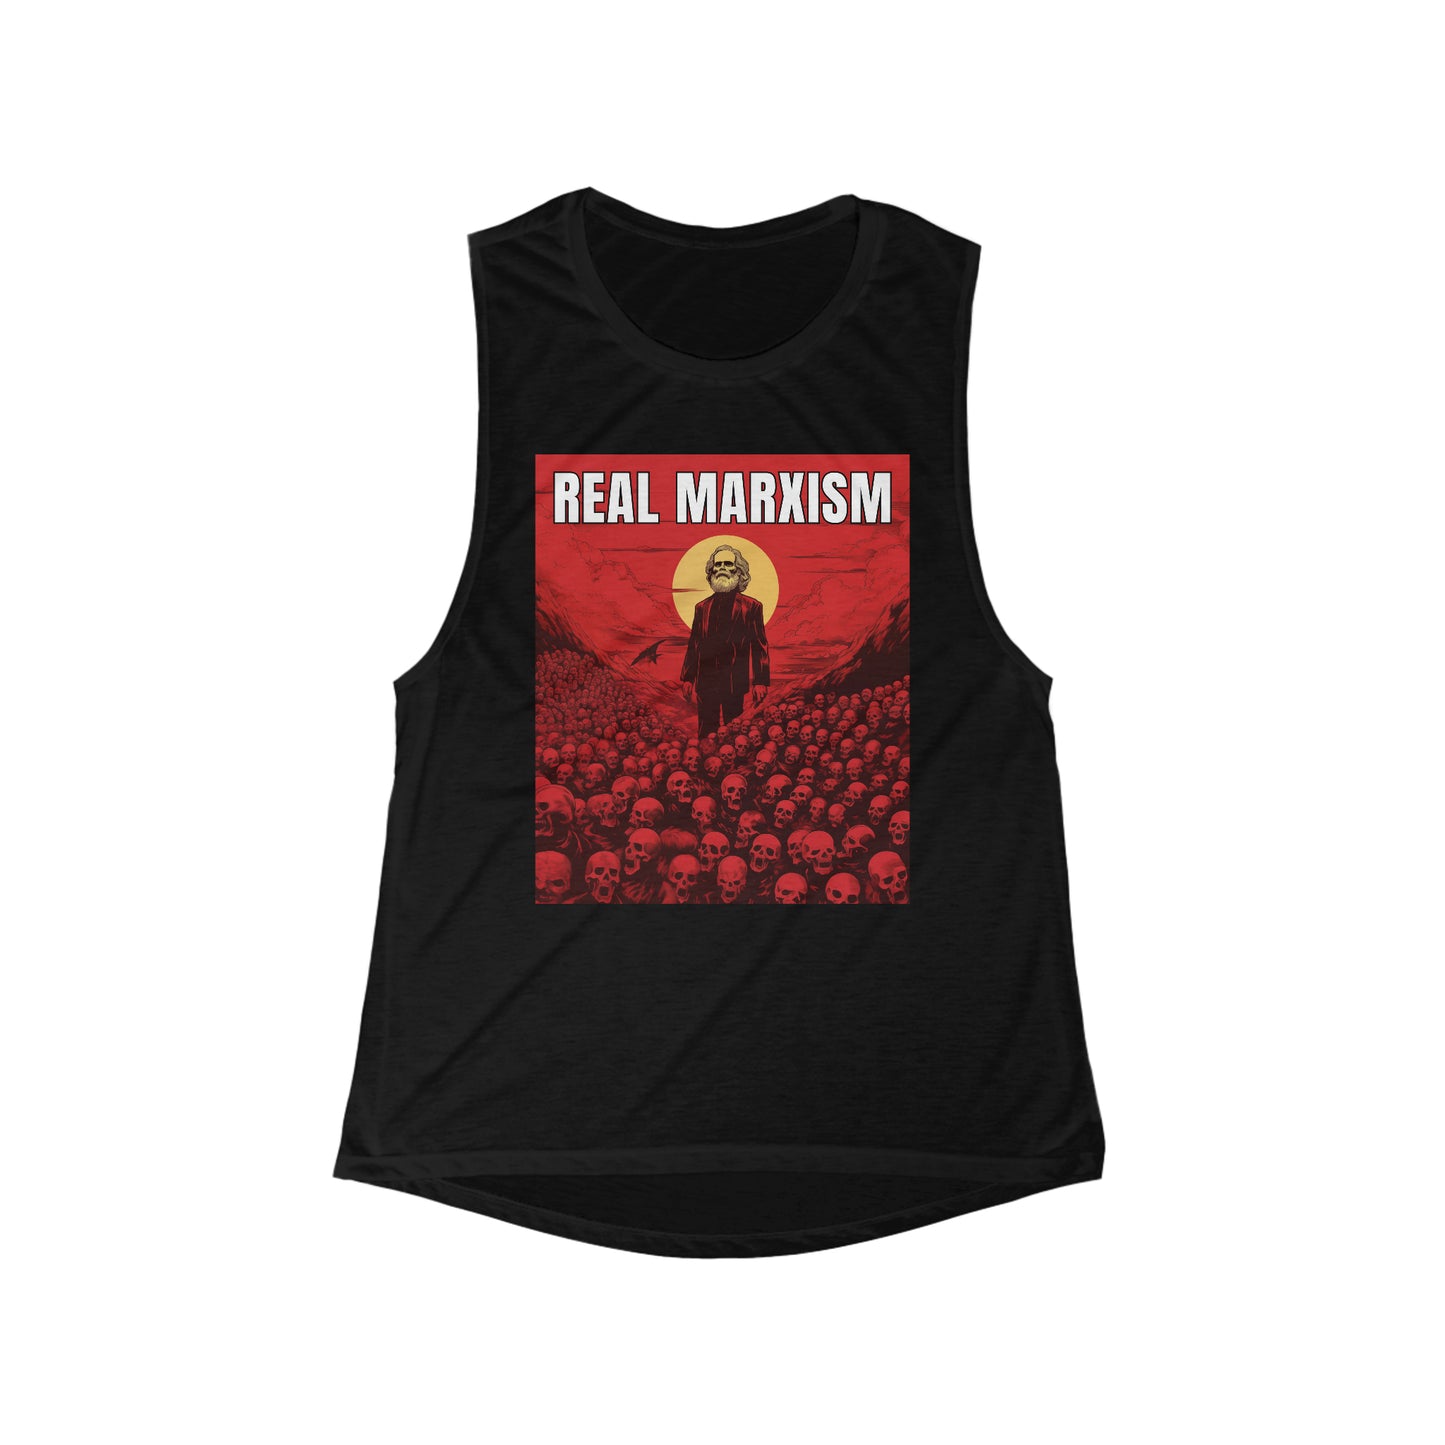 Real Marxism Women's Flowy Scoop Muscle Tank